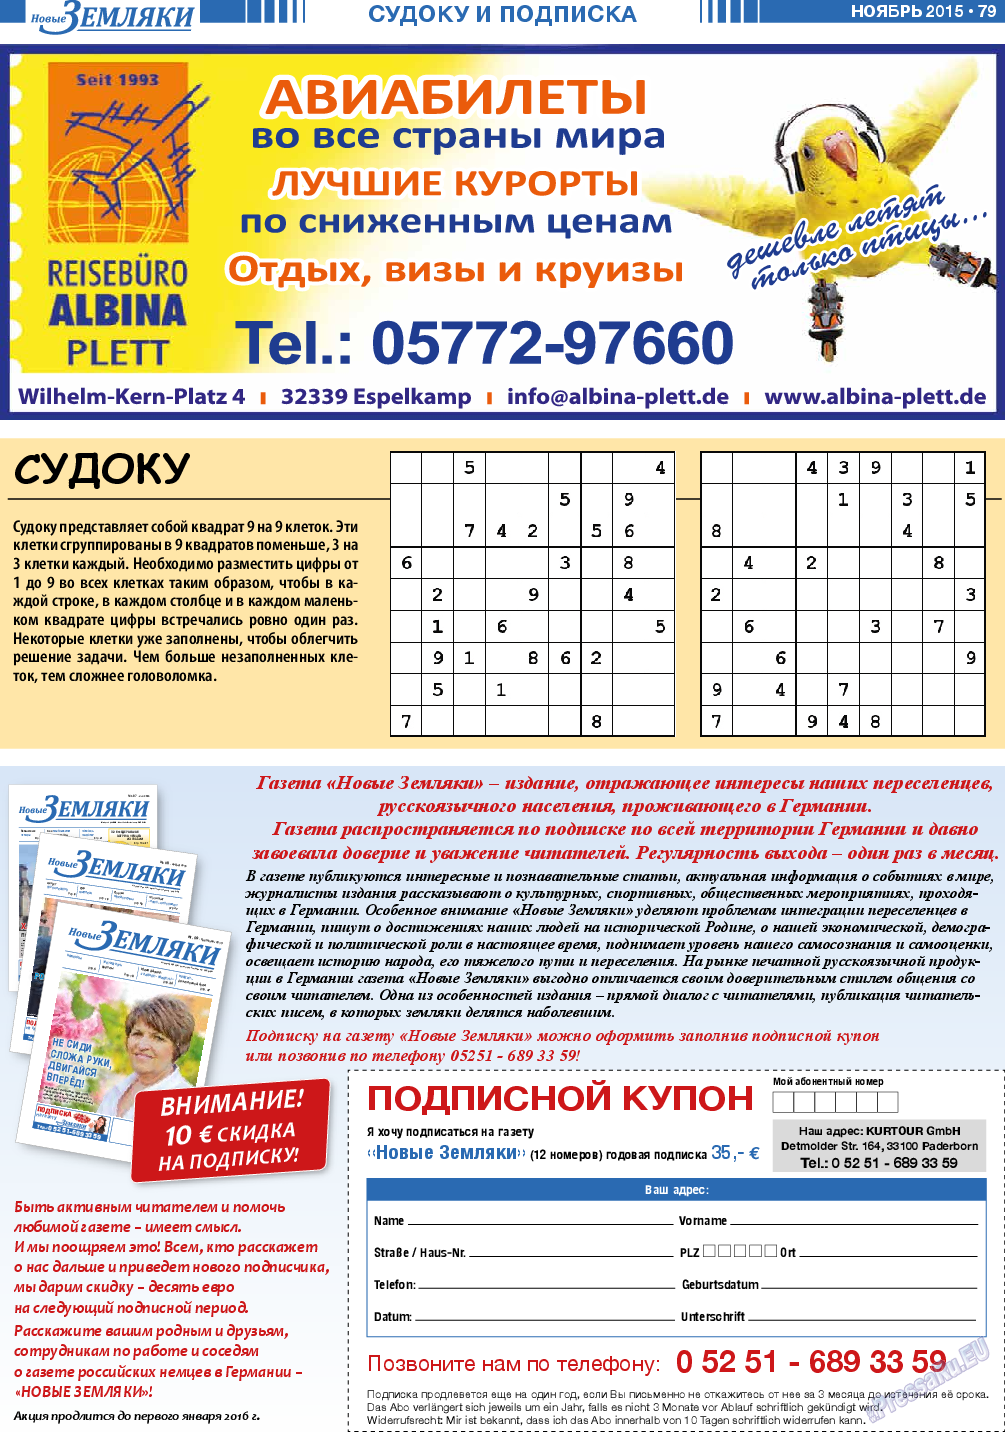 Новые Земляки, газета. 2015 №11 стр.79